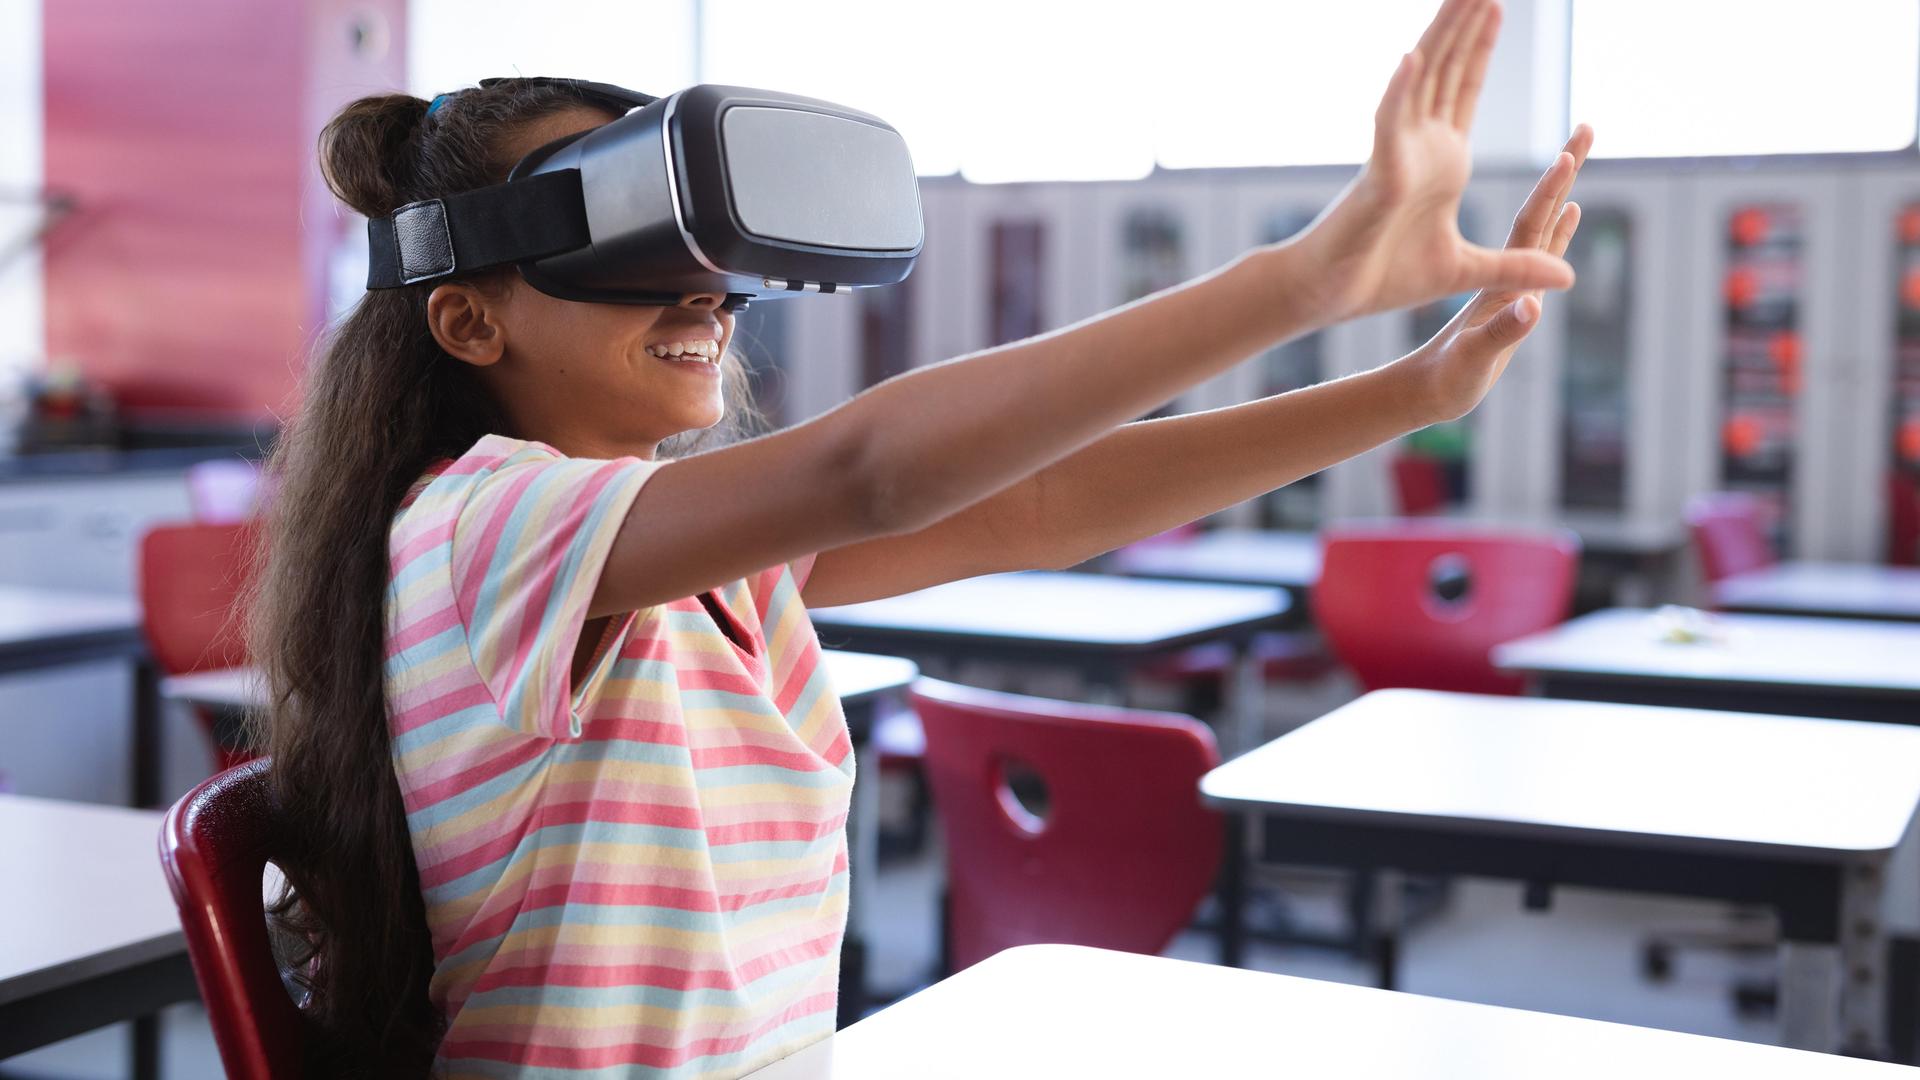 Schülerin in den USA sitzt mit einer VR Brille im Klassenzimmer (Symbolbild)